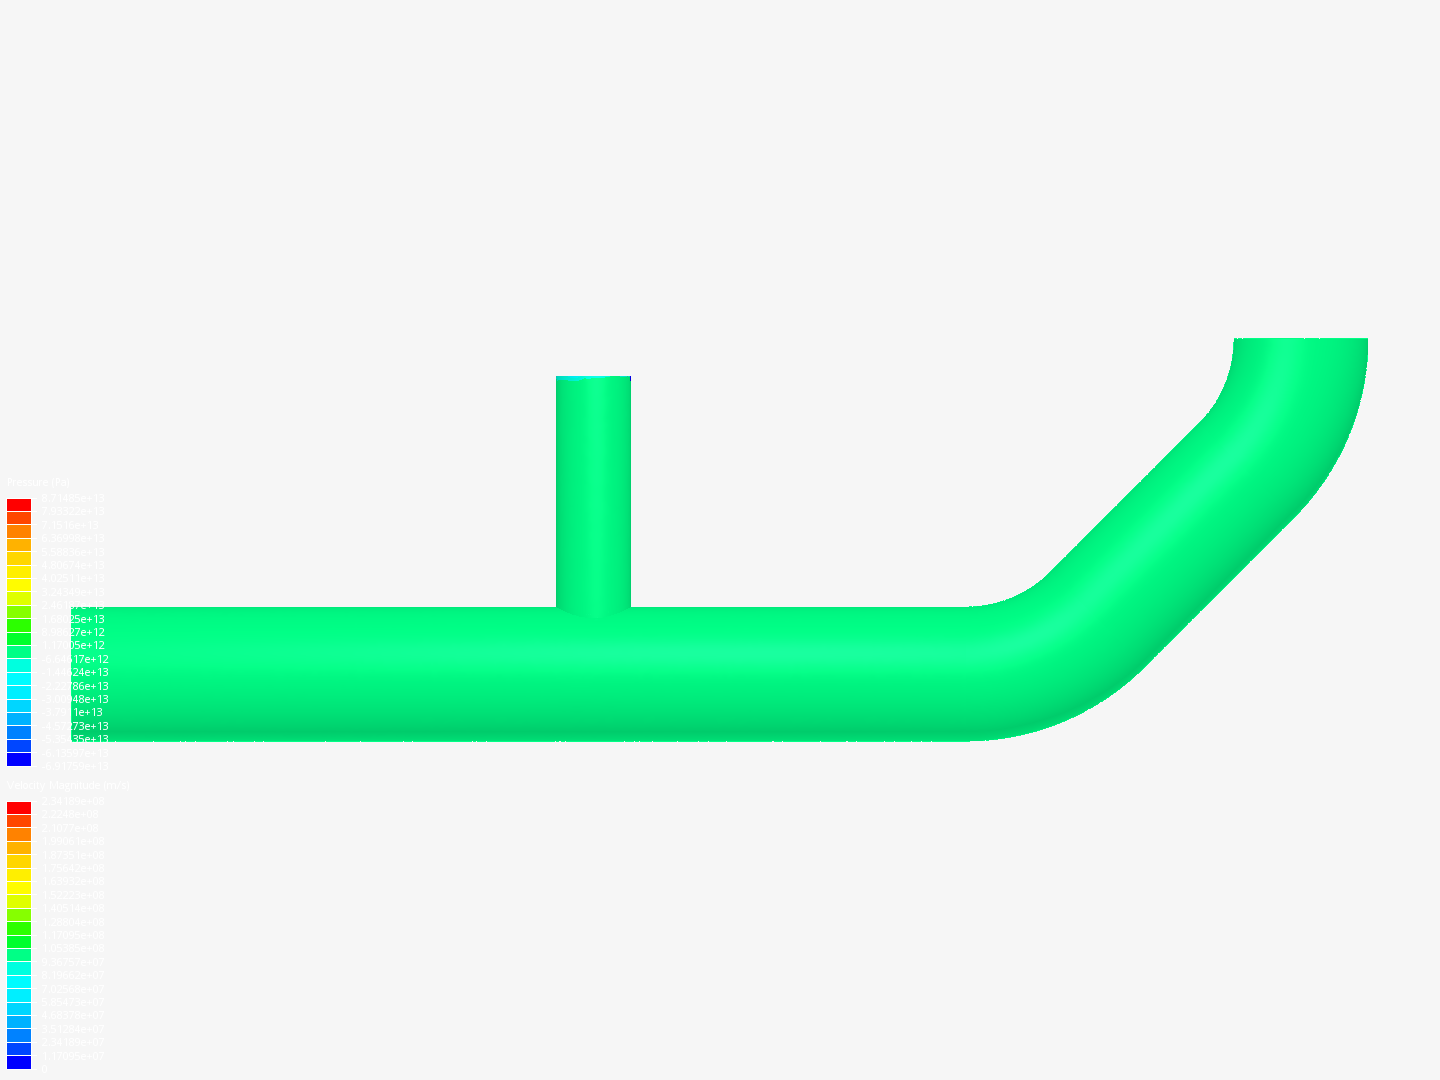 Tutorial-02: Pipe junction flow image